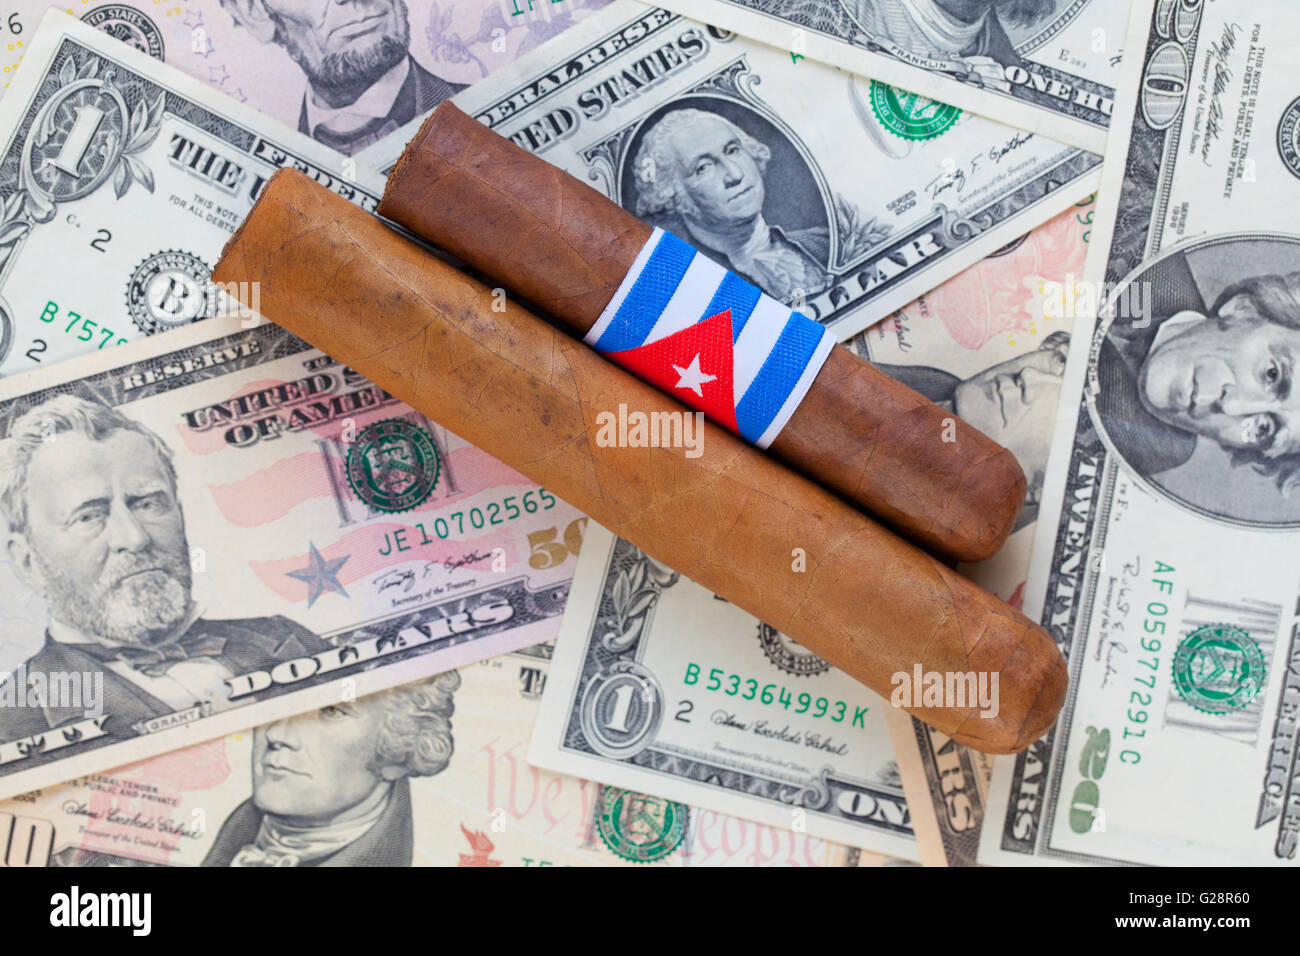 Détail de cigares cubains de luxe sur le dollar US banknotes Banque D'Images